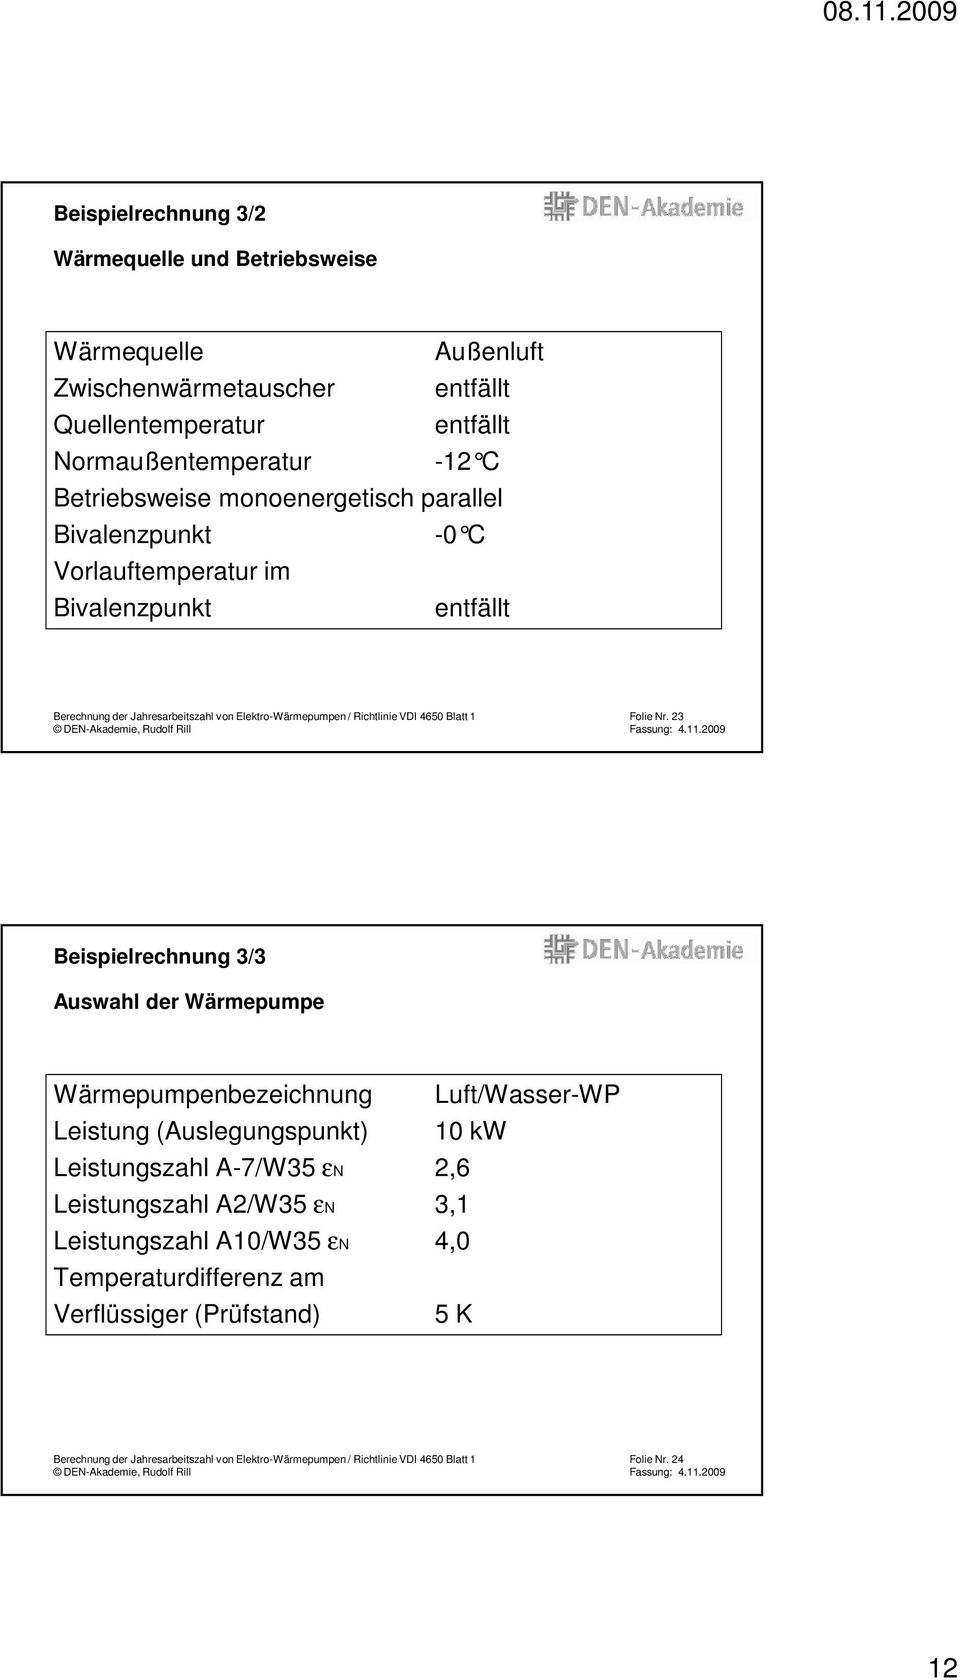 Nr. 23 Beispielrechnung 3/3 Auswahl der Wärmepumpe Wärmepumpenbezeichnung Luft/Wasser-WP Leistung (Auslegungspunkt) 10 kw